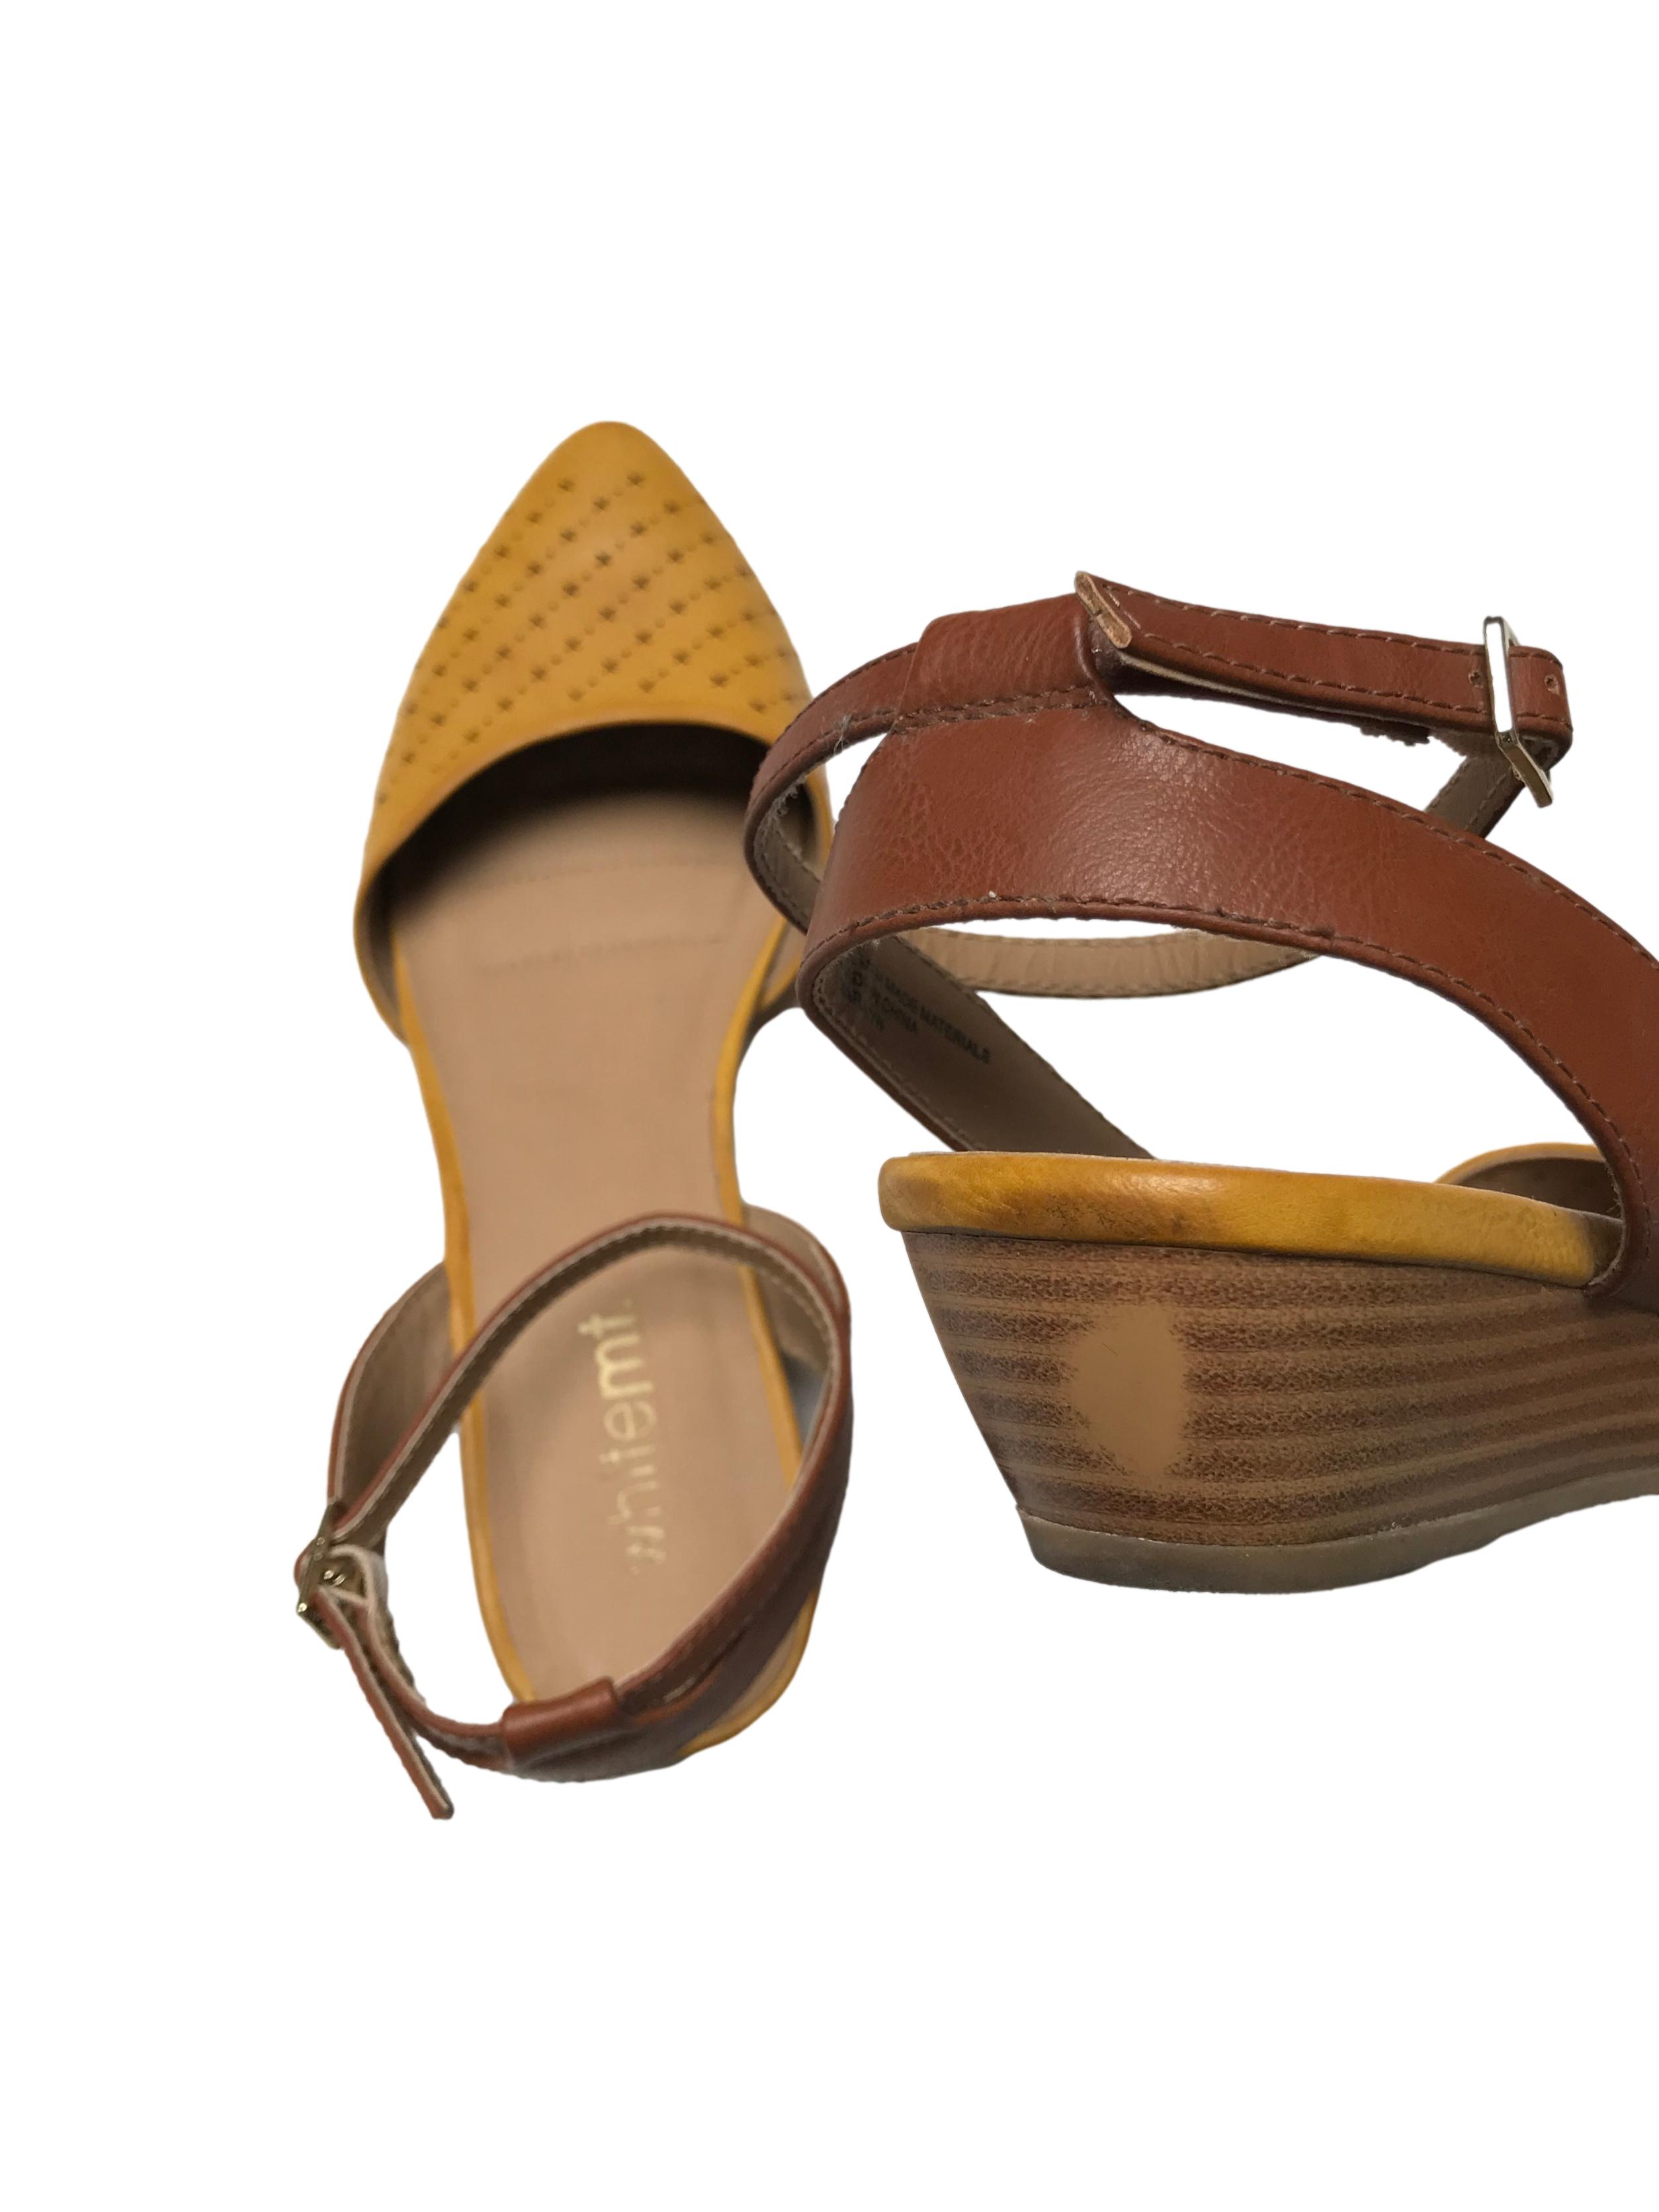 Zapatos Whitemt punta cerrada con diseño marrón, correa al tobillo, taco 4cm. Estado 8.5/10